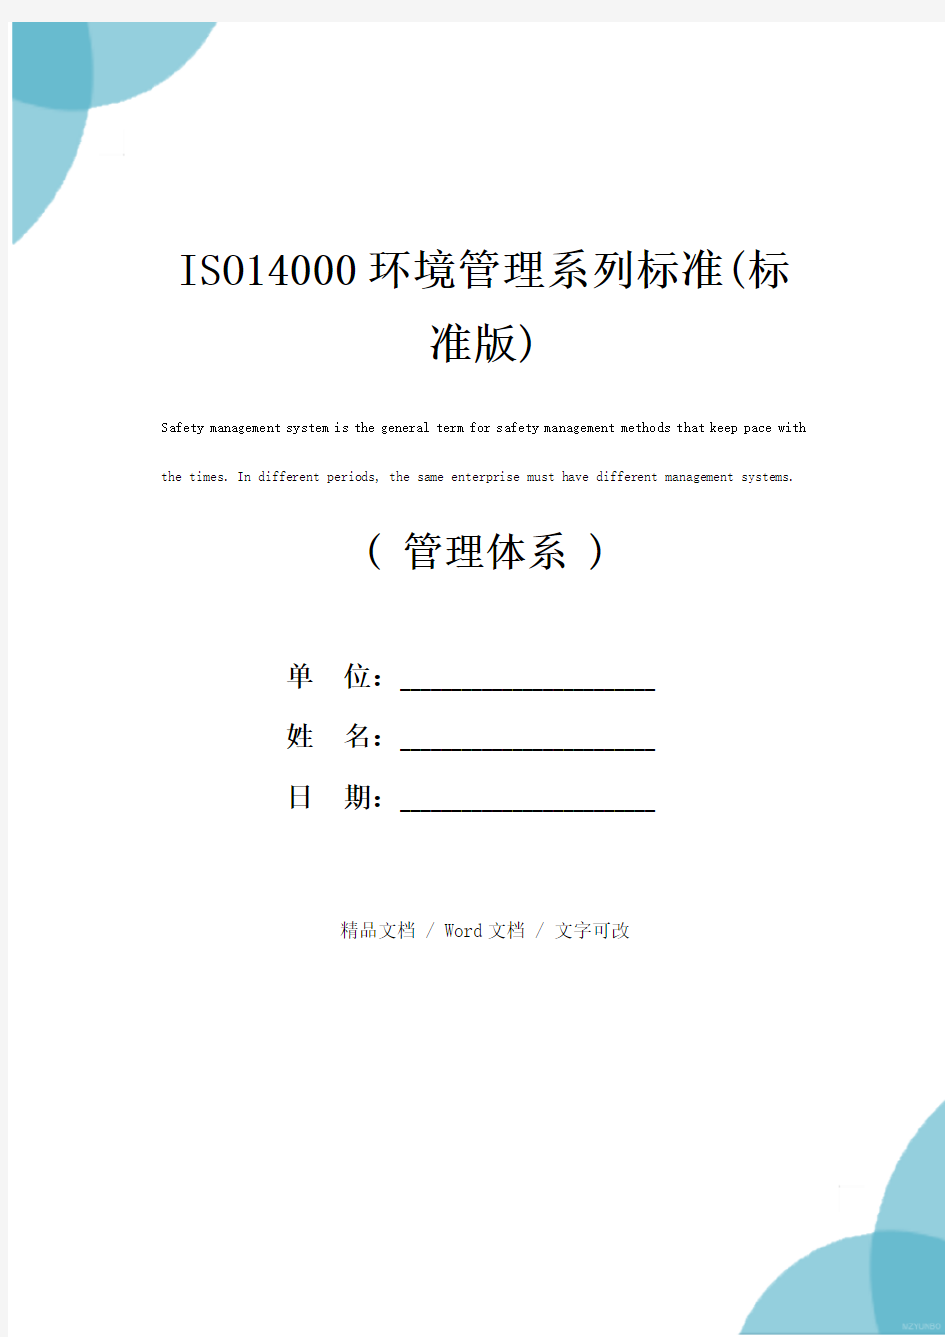 ISO14000环境管理系列标准(标准版)